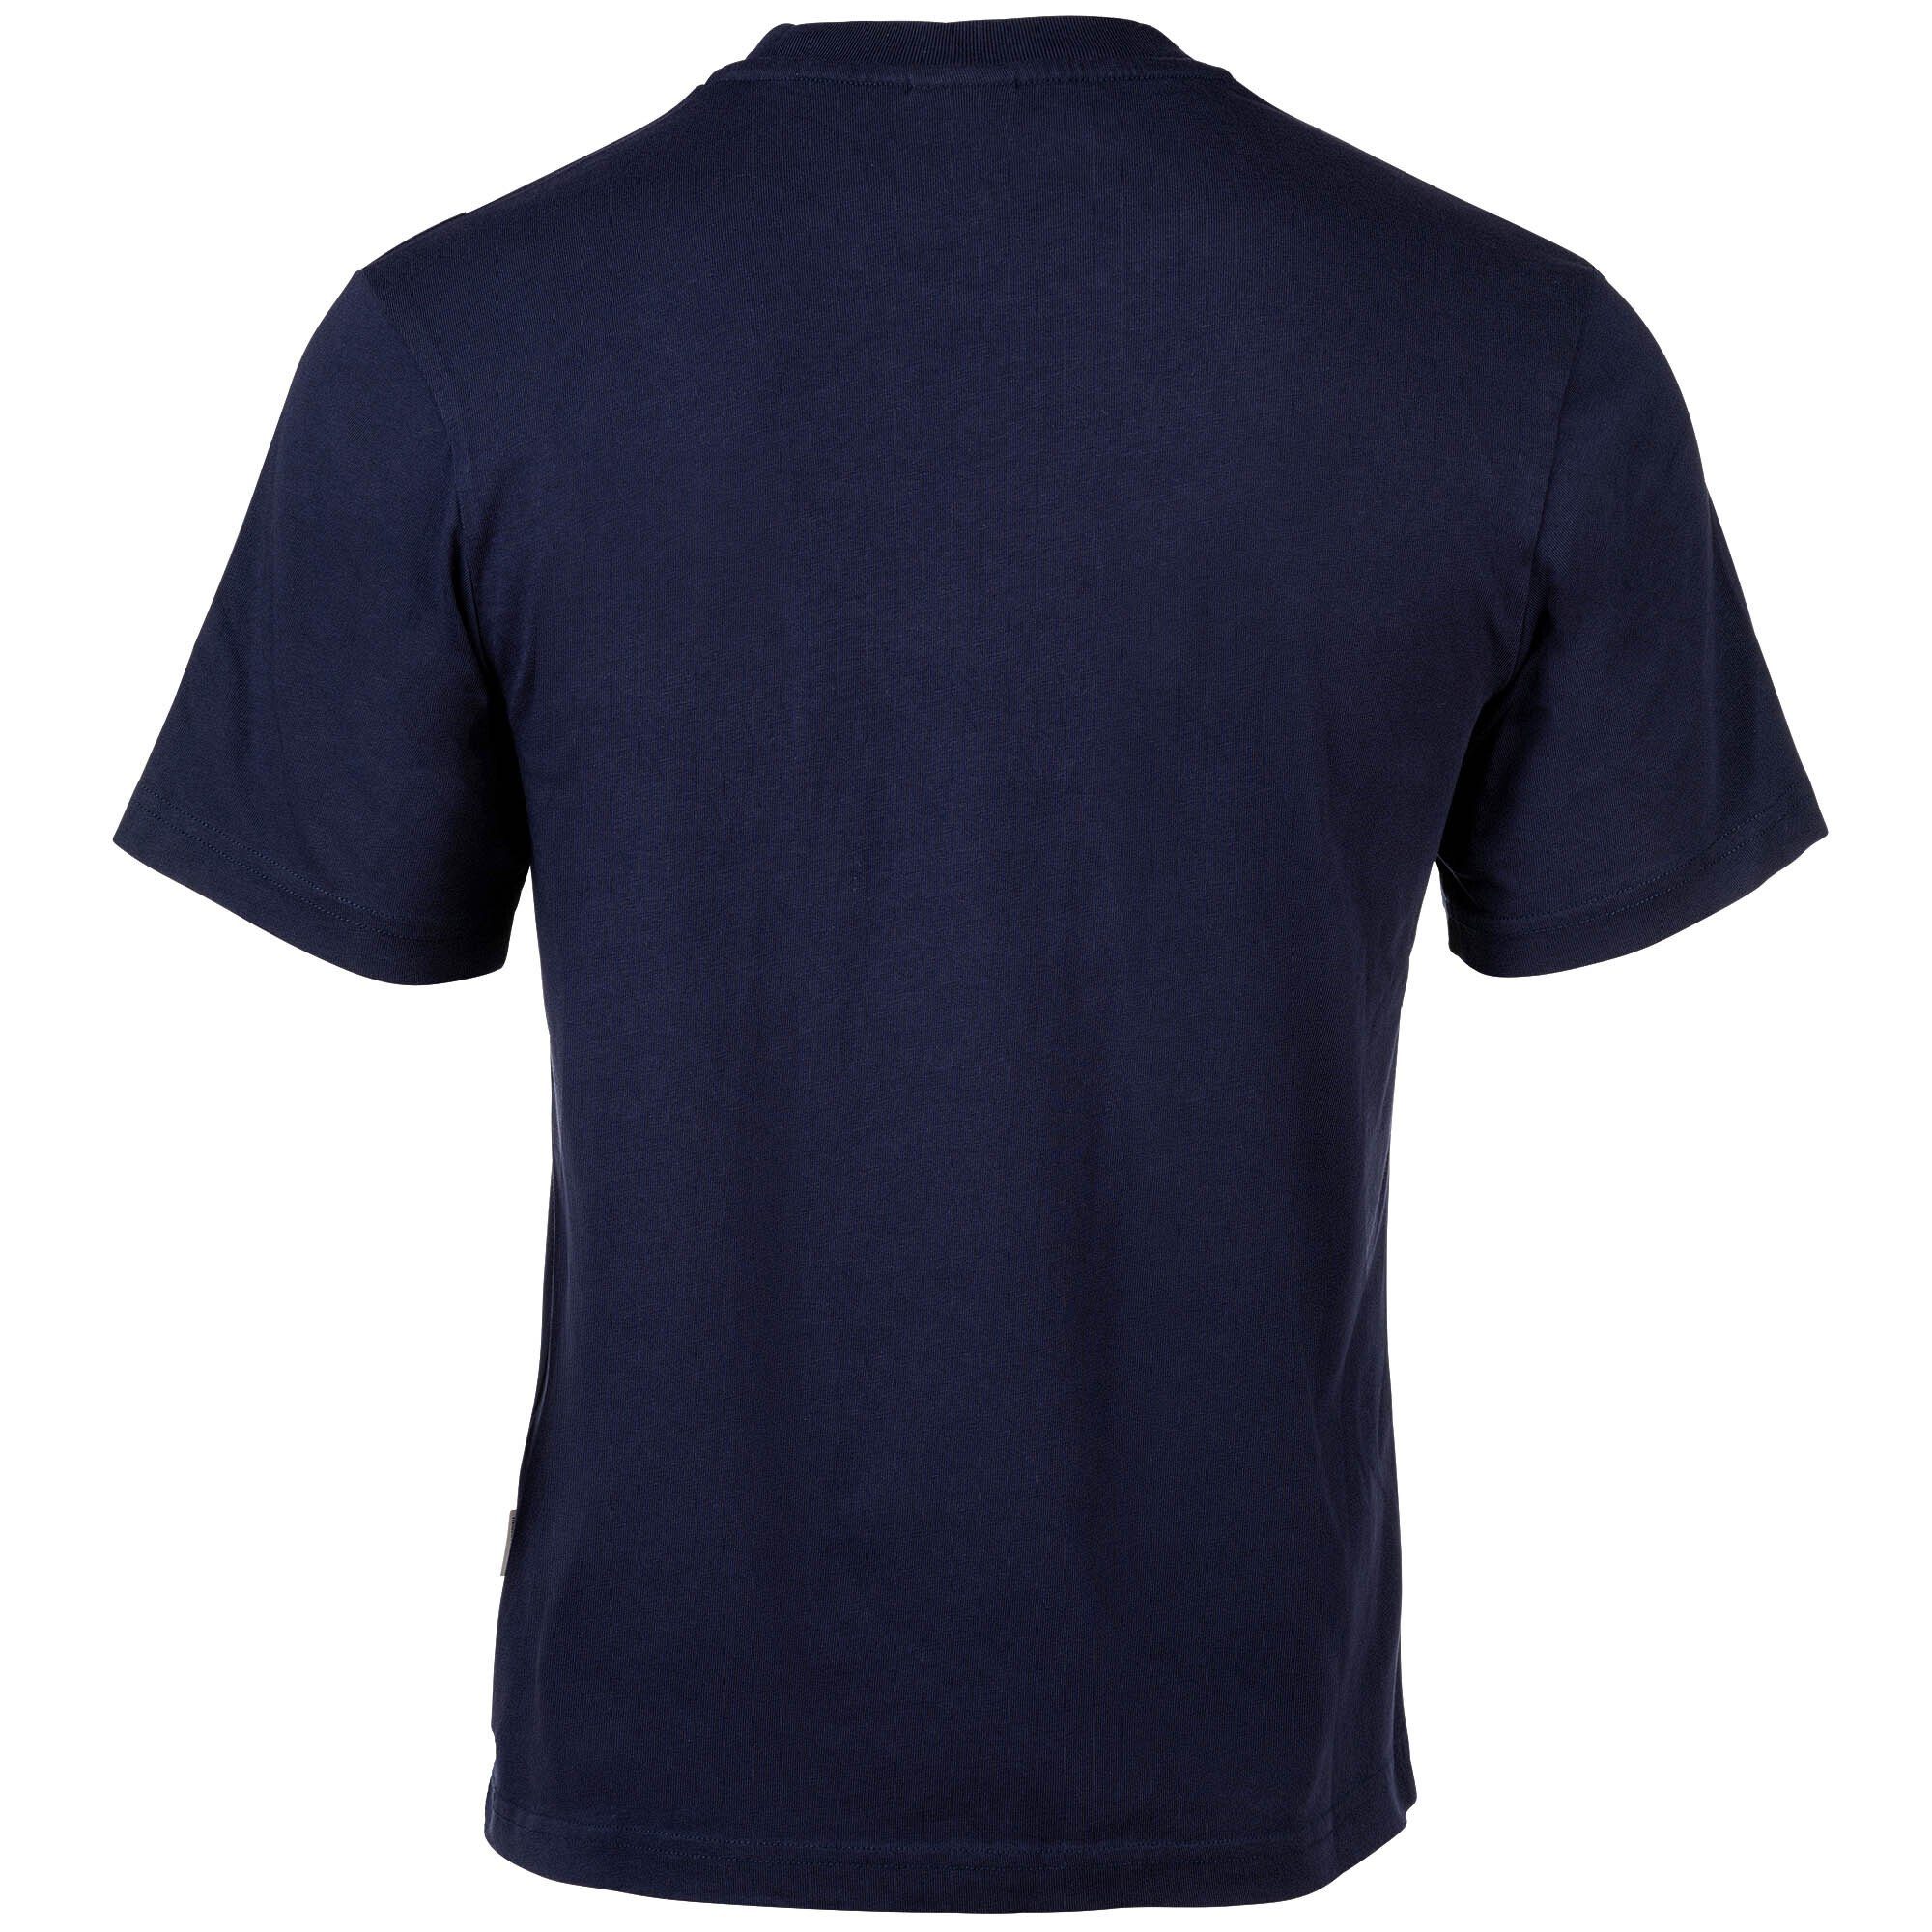 Blau AND MARSHALL Logodruck T-Shirt Baumwolle, Herren T-Shirt Rundhals, - FRANKLIN